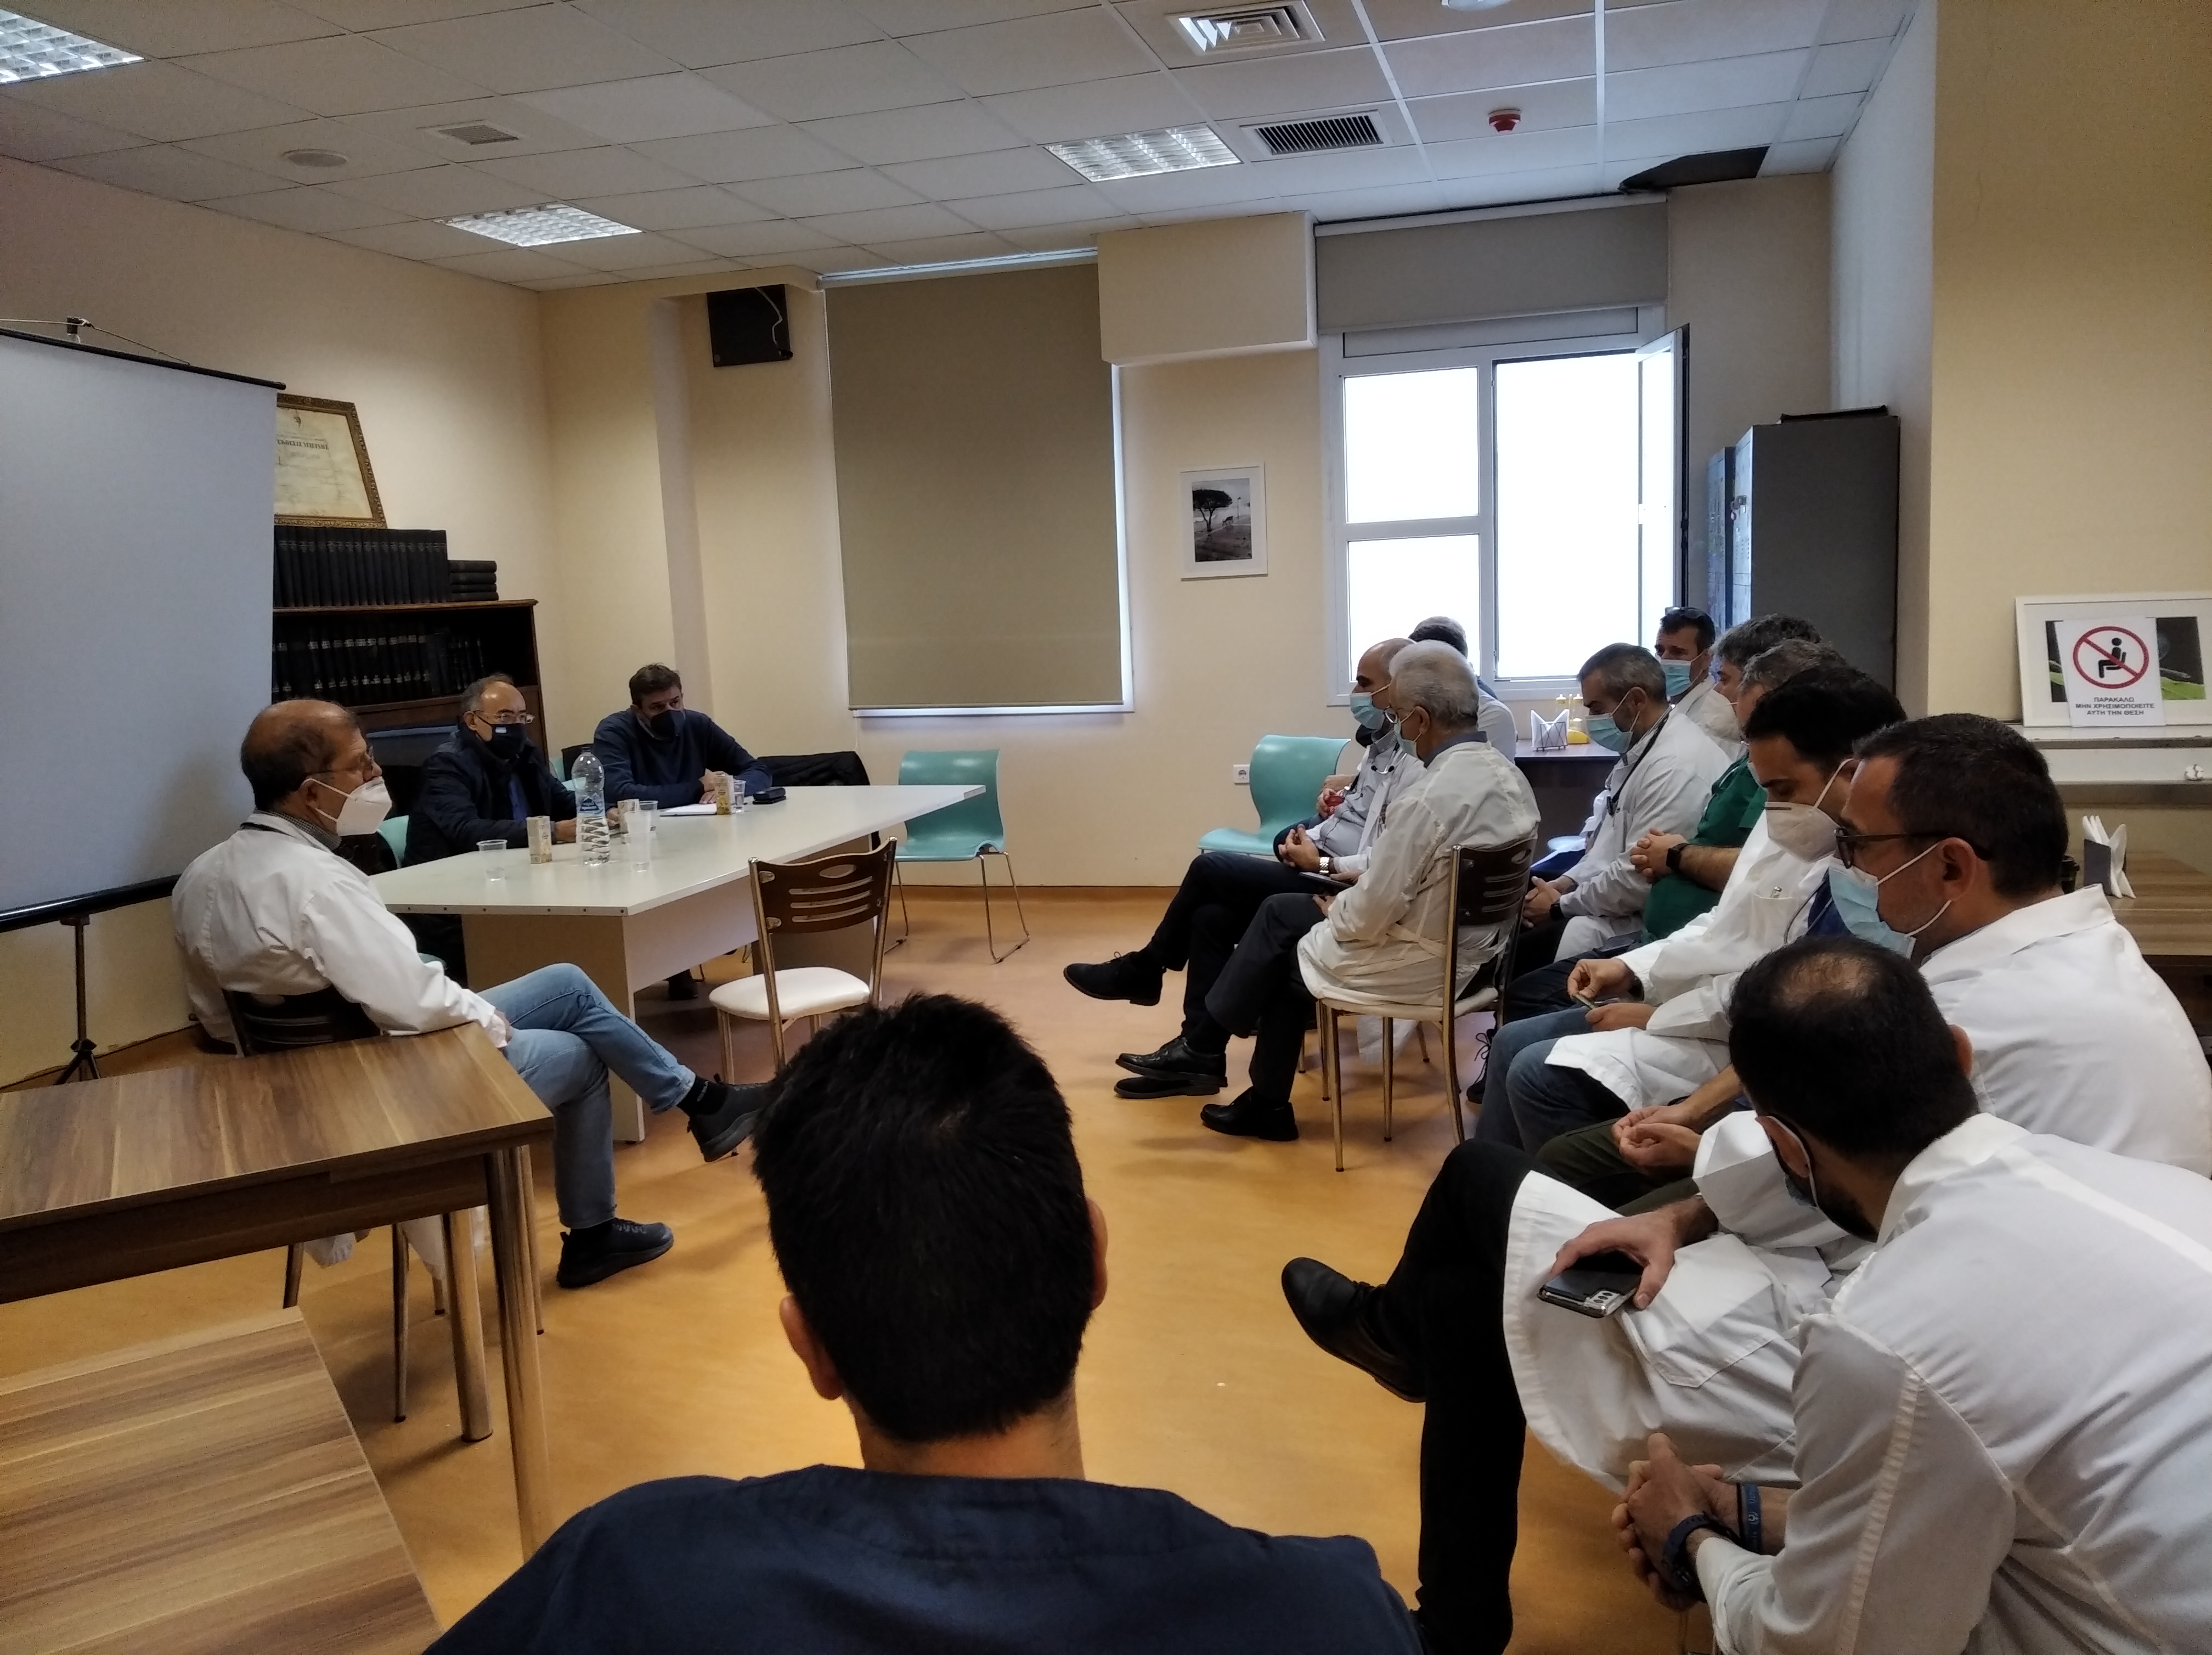 Α. Ξανθός από το Νοσοκομείο Χίου: οι πρόσφατες ανατροπές  στις εργασιακές σχέσεις των γιατρών τον ΕΣΥ θα επιδεινώσουν  το έλλειμμα στελέχωσης στις άγονες και νησιωτικές περιοχές